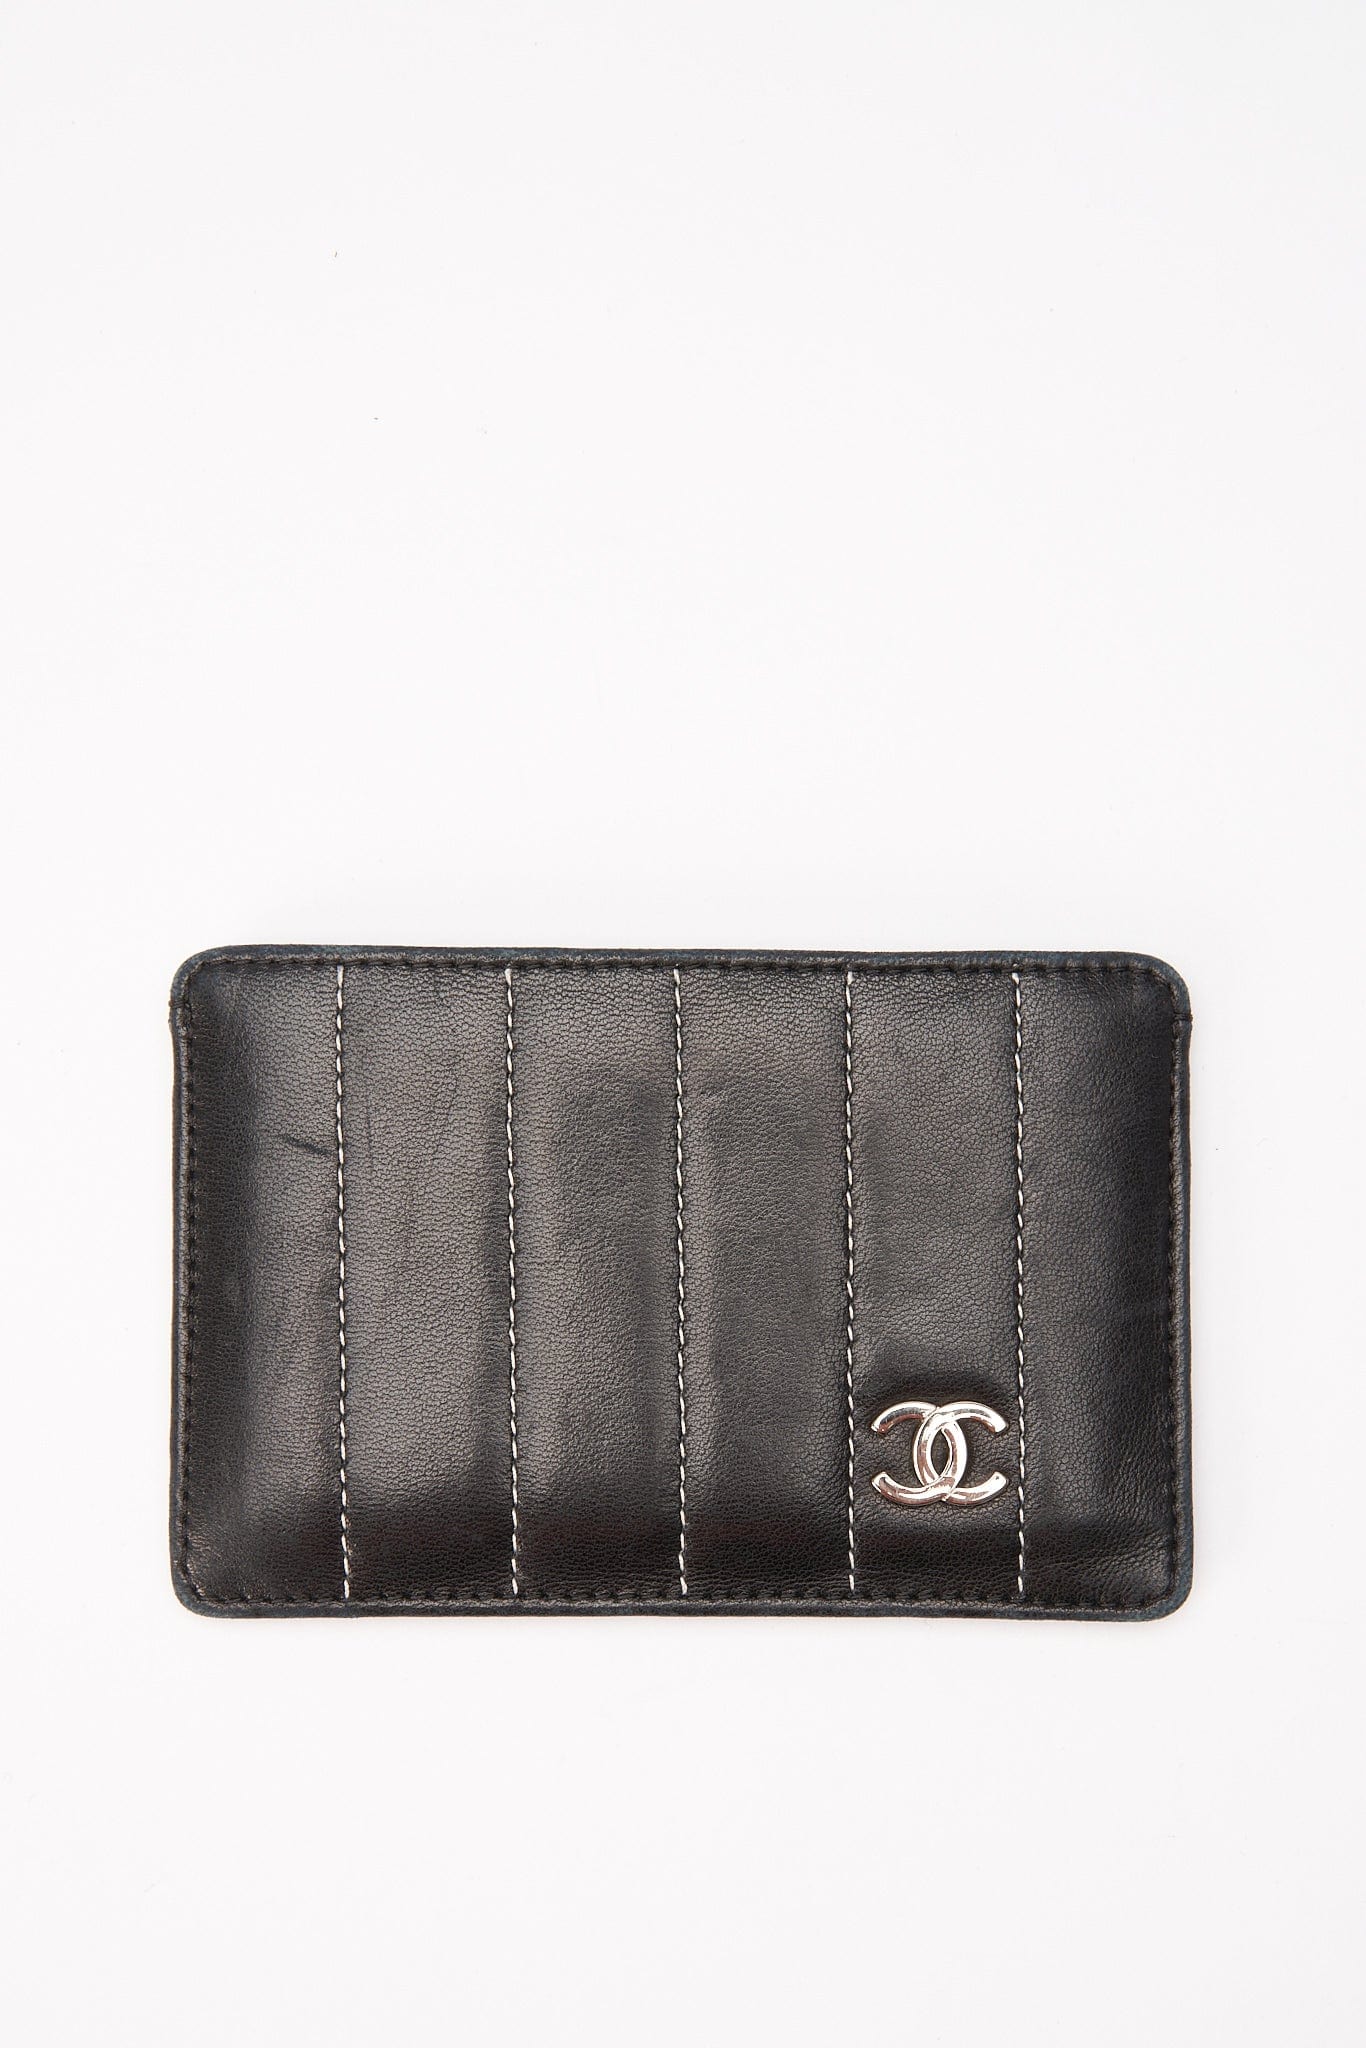 Chanel Black Leather Vintage Card Holder – The Hosta